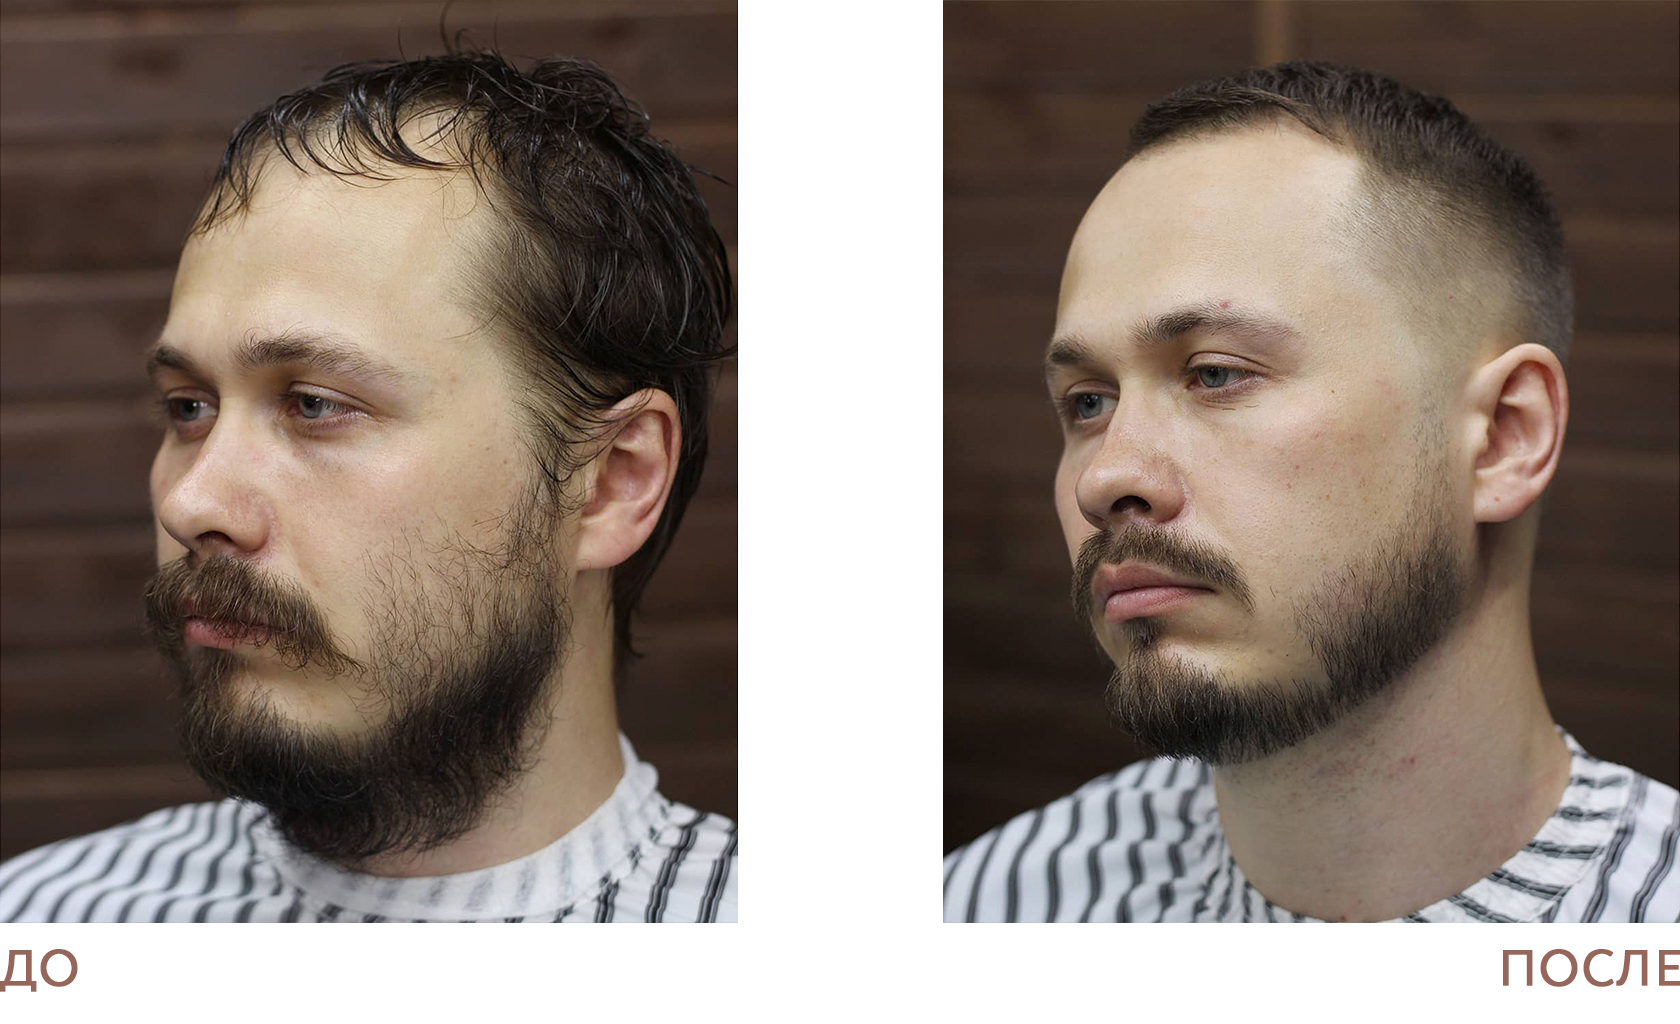 Программа подбора усов и бороды по фотографии